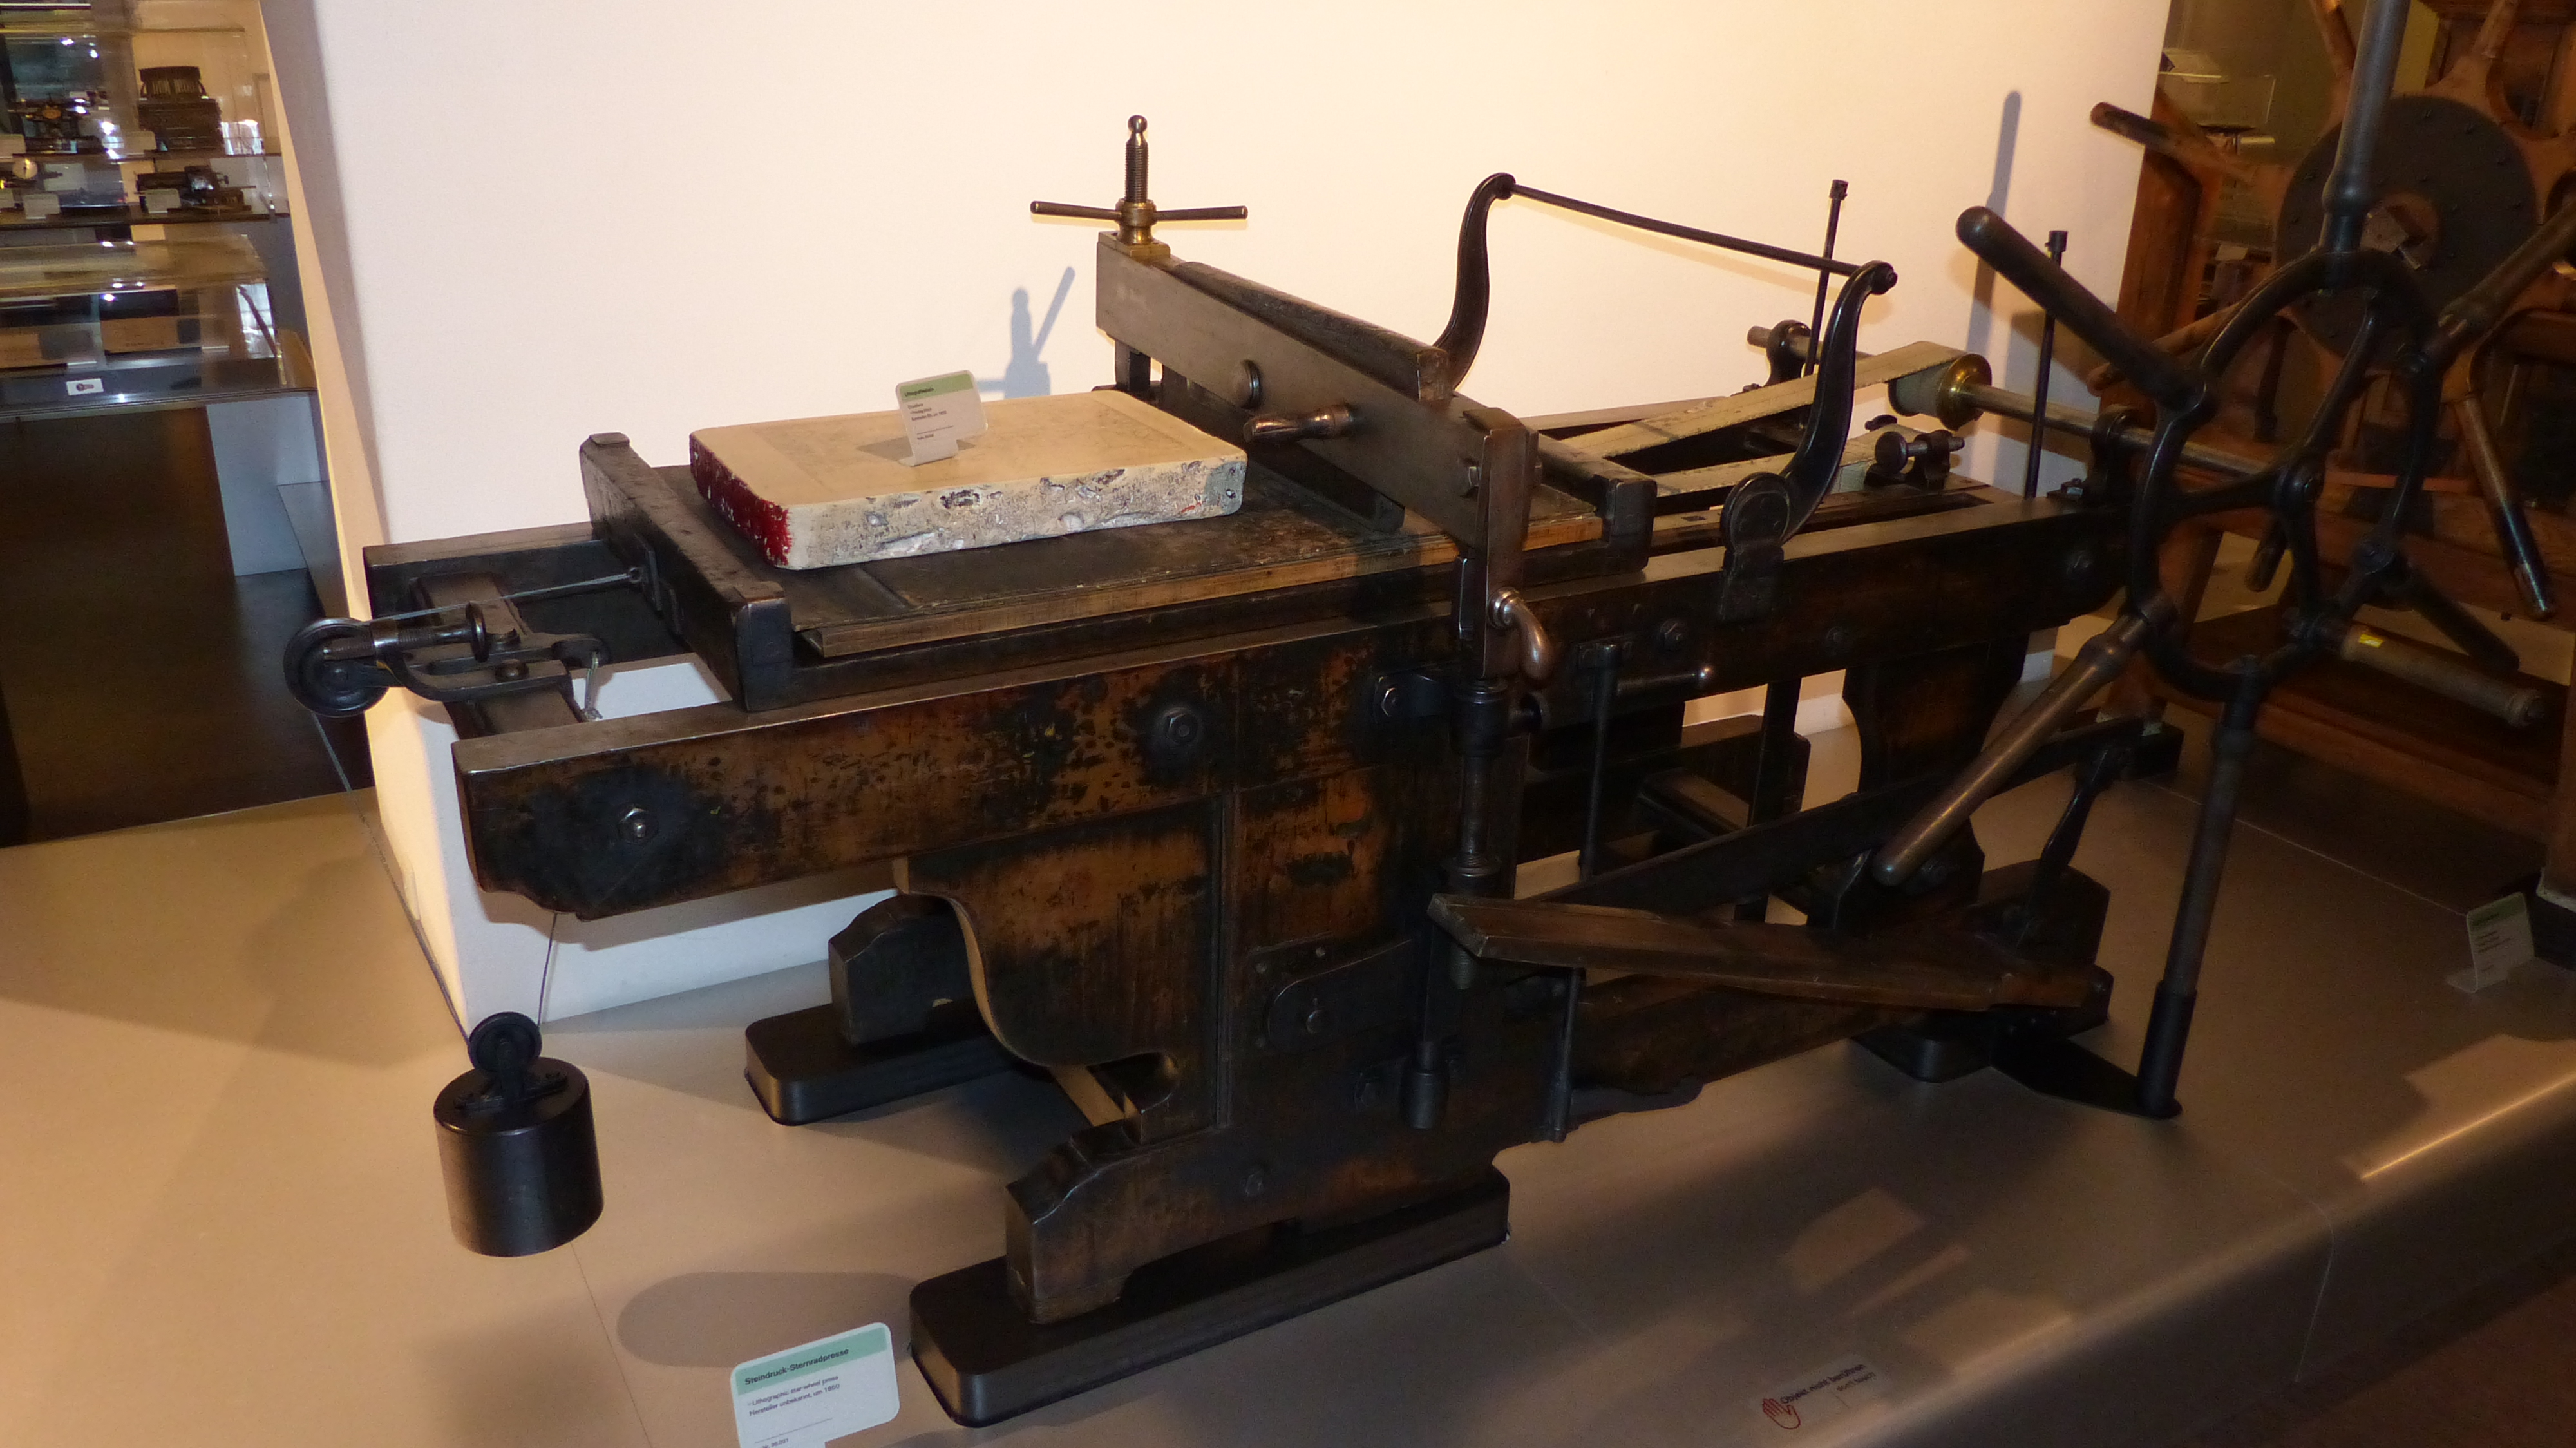 Steindruck-Sternradpresse aus dem Jahr 1850. Exponat des Technischen Museums in Wien.